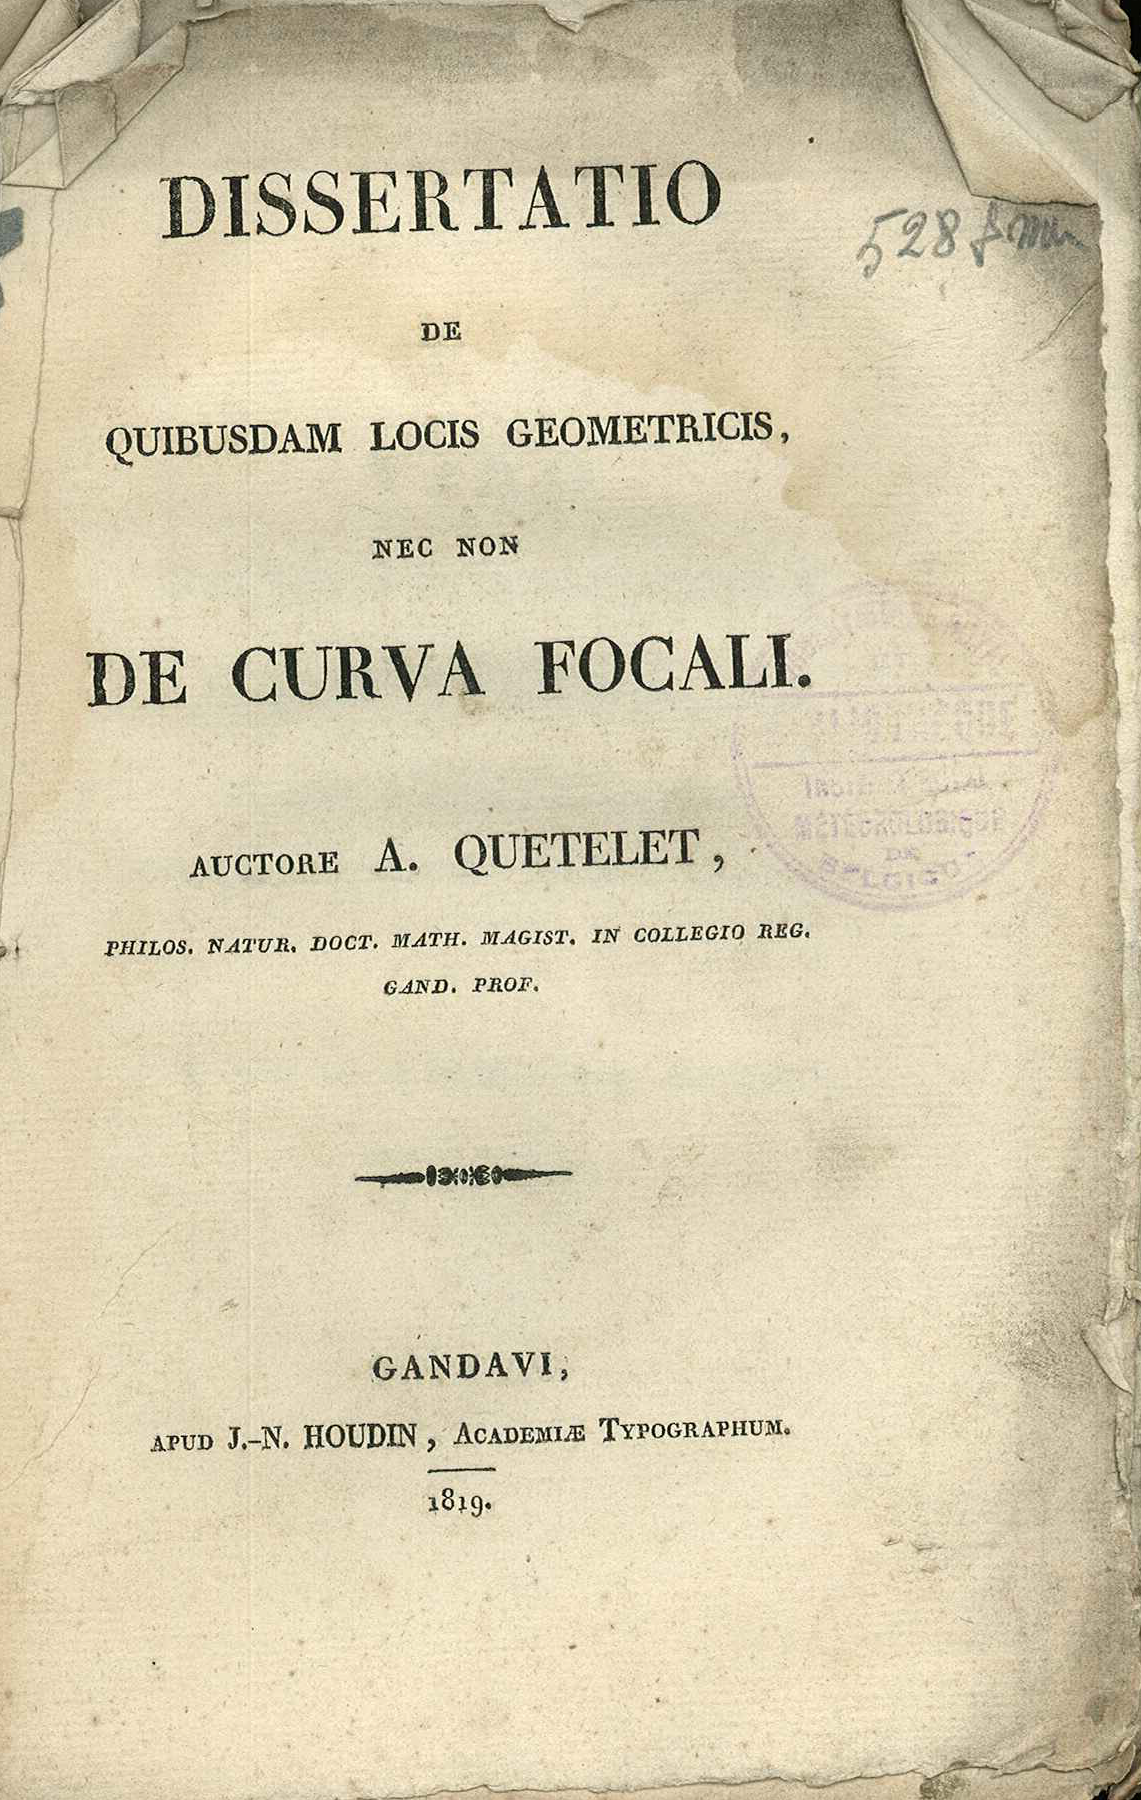 Page-titre de la thèse de doctorat d'Adolphe Queletet, défendue le 24 juillet 1819, à l'Université de Gand.